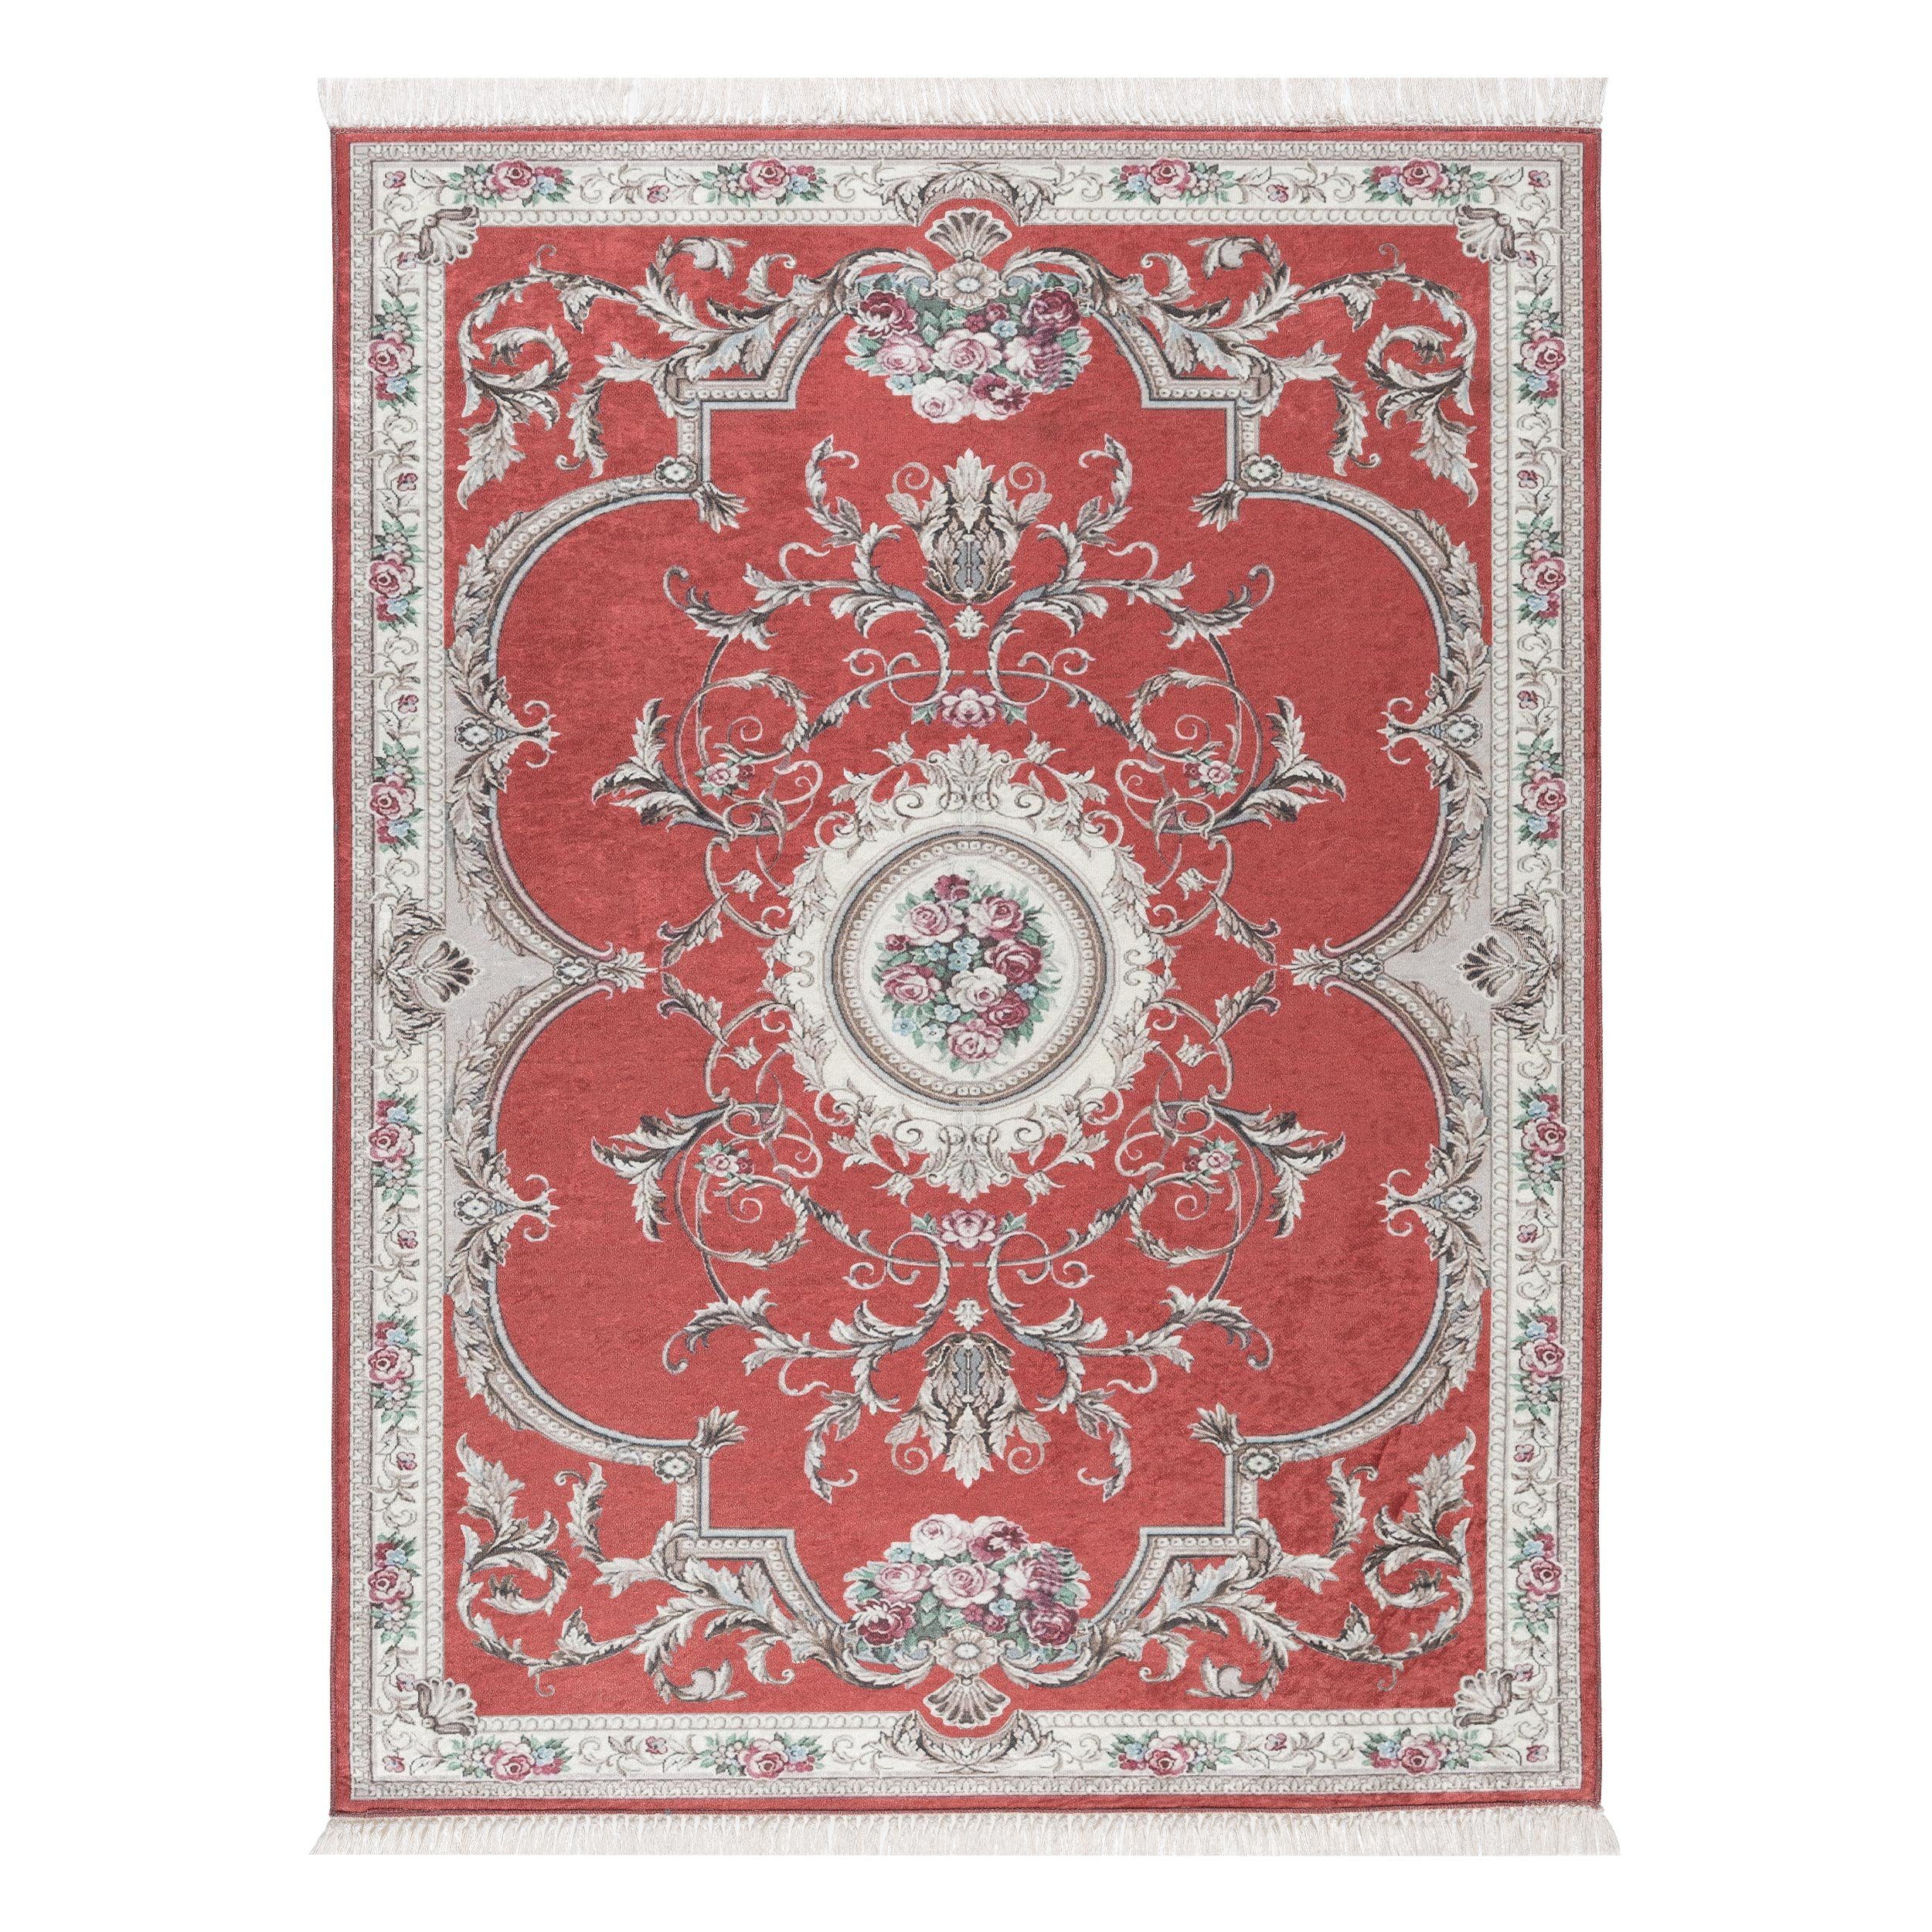 Teppich Teppich rot glänzende Bordüre, schön sehr floral, Rechteckig, mit Medaillon, Sehrazat, klassisch, mm, Fransen, floral, classic Oberfläche, 3 Design, mit mit Höhe